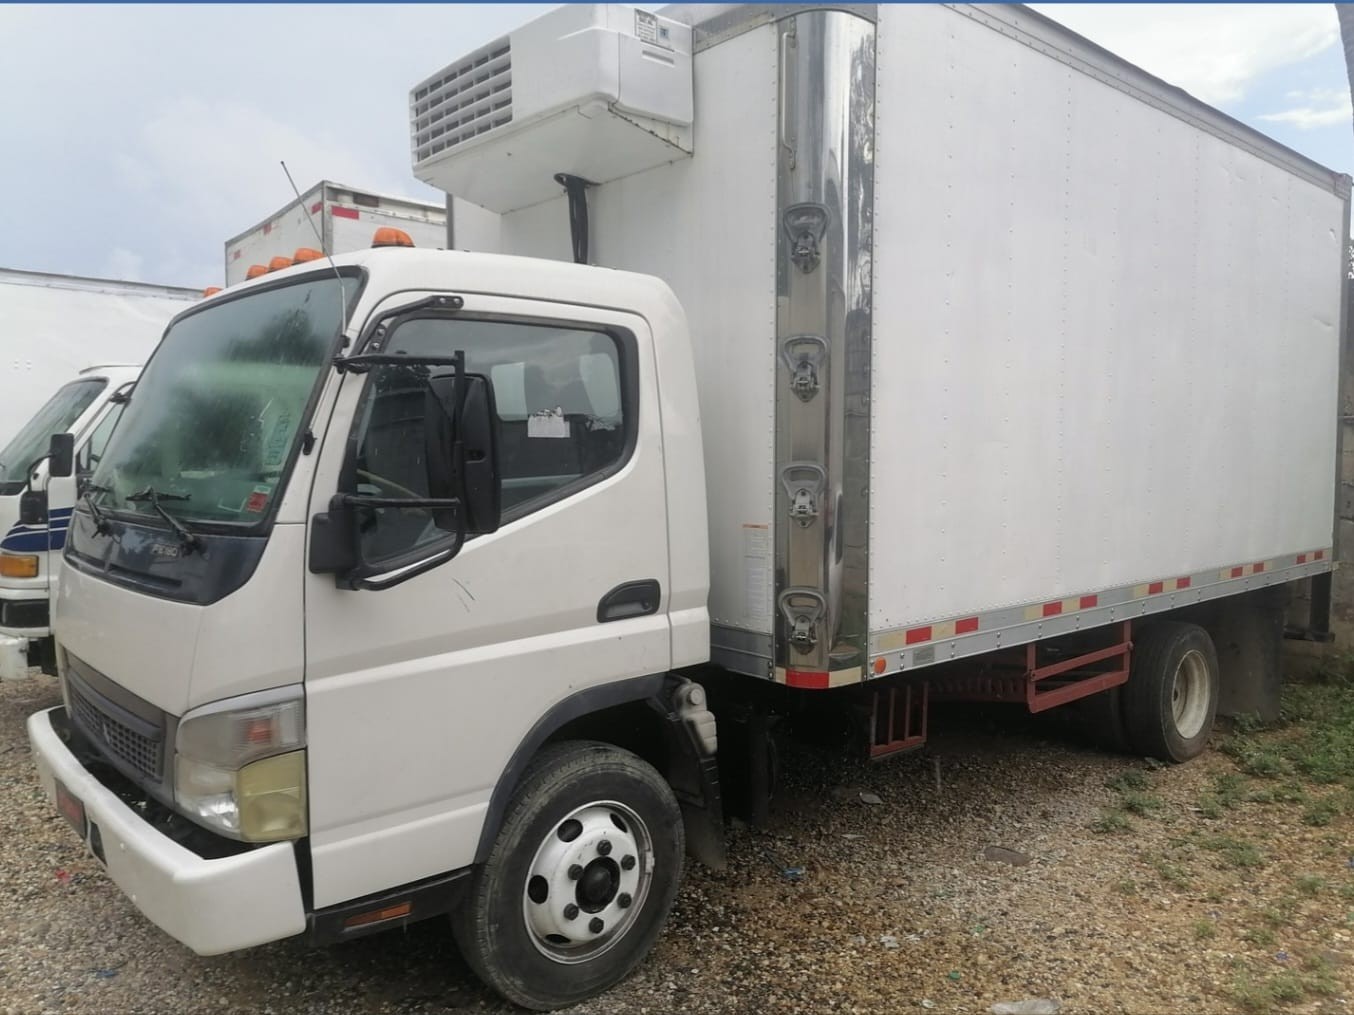 camiones y vehiculos pesados - Mitsubishi fuso 2006 refrigerado  1